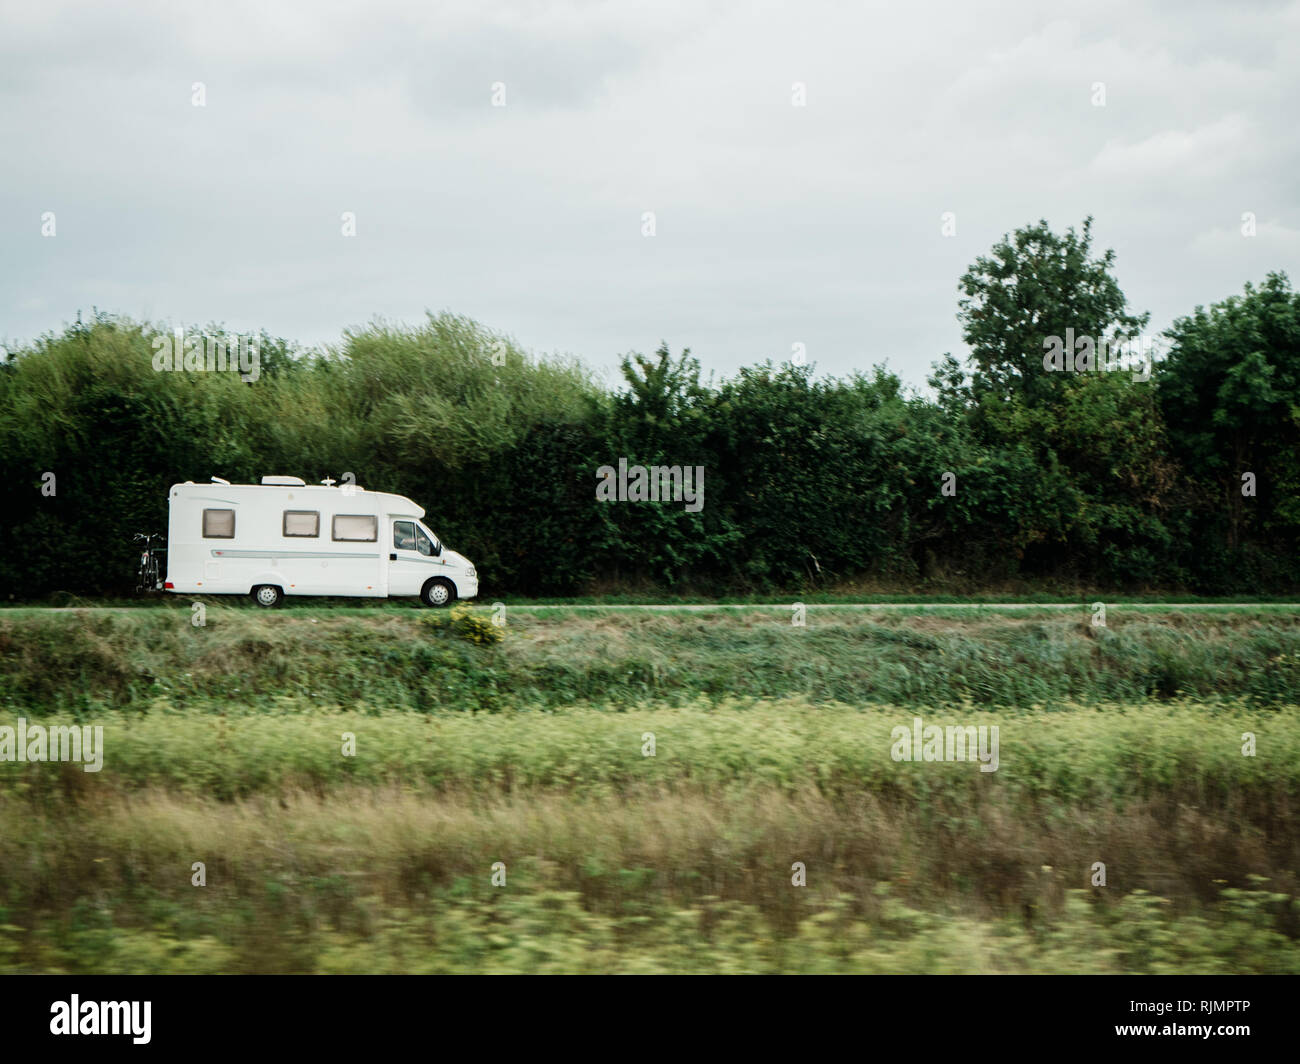 RV Camping-car blanc van conduite rapide - Conduite de camping-car en vert l'environnement écologique propre à l'époque des loisirs camping Banque D'Images